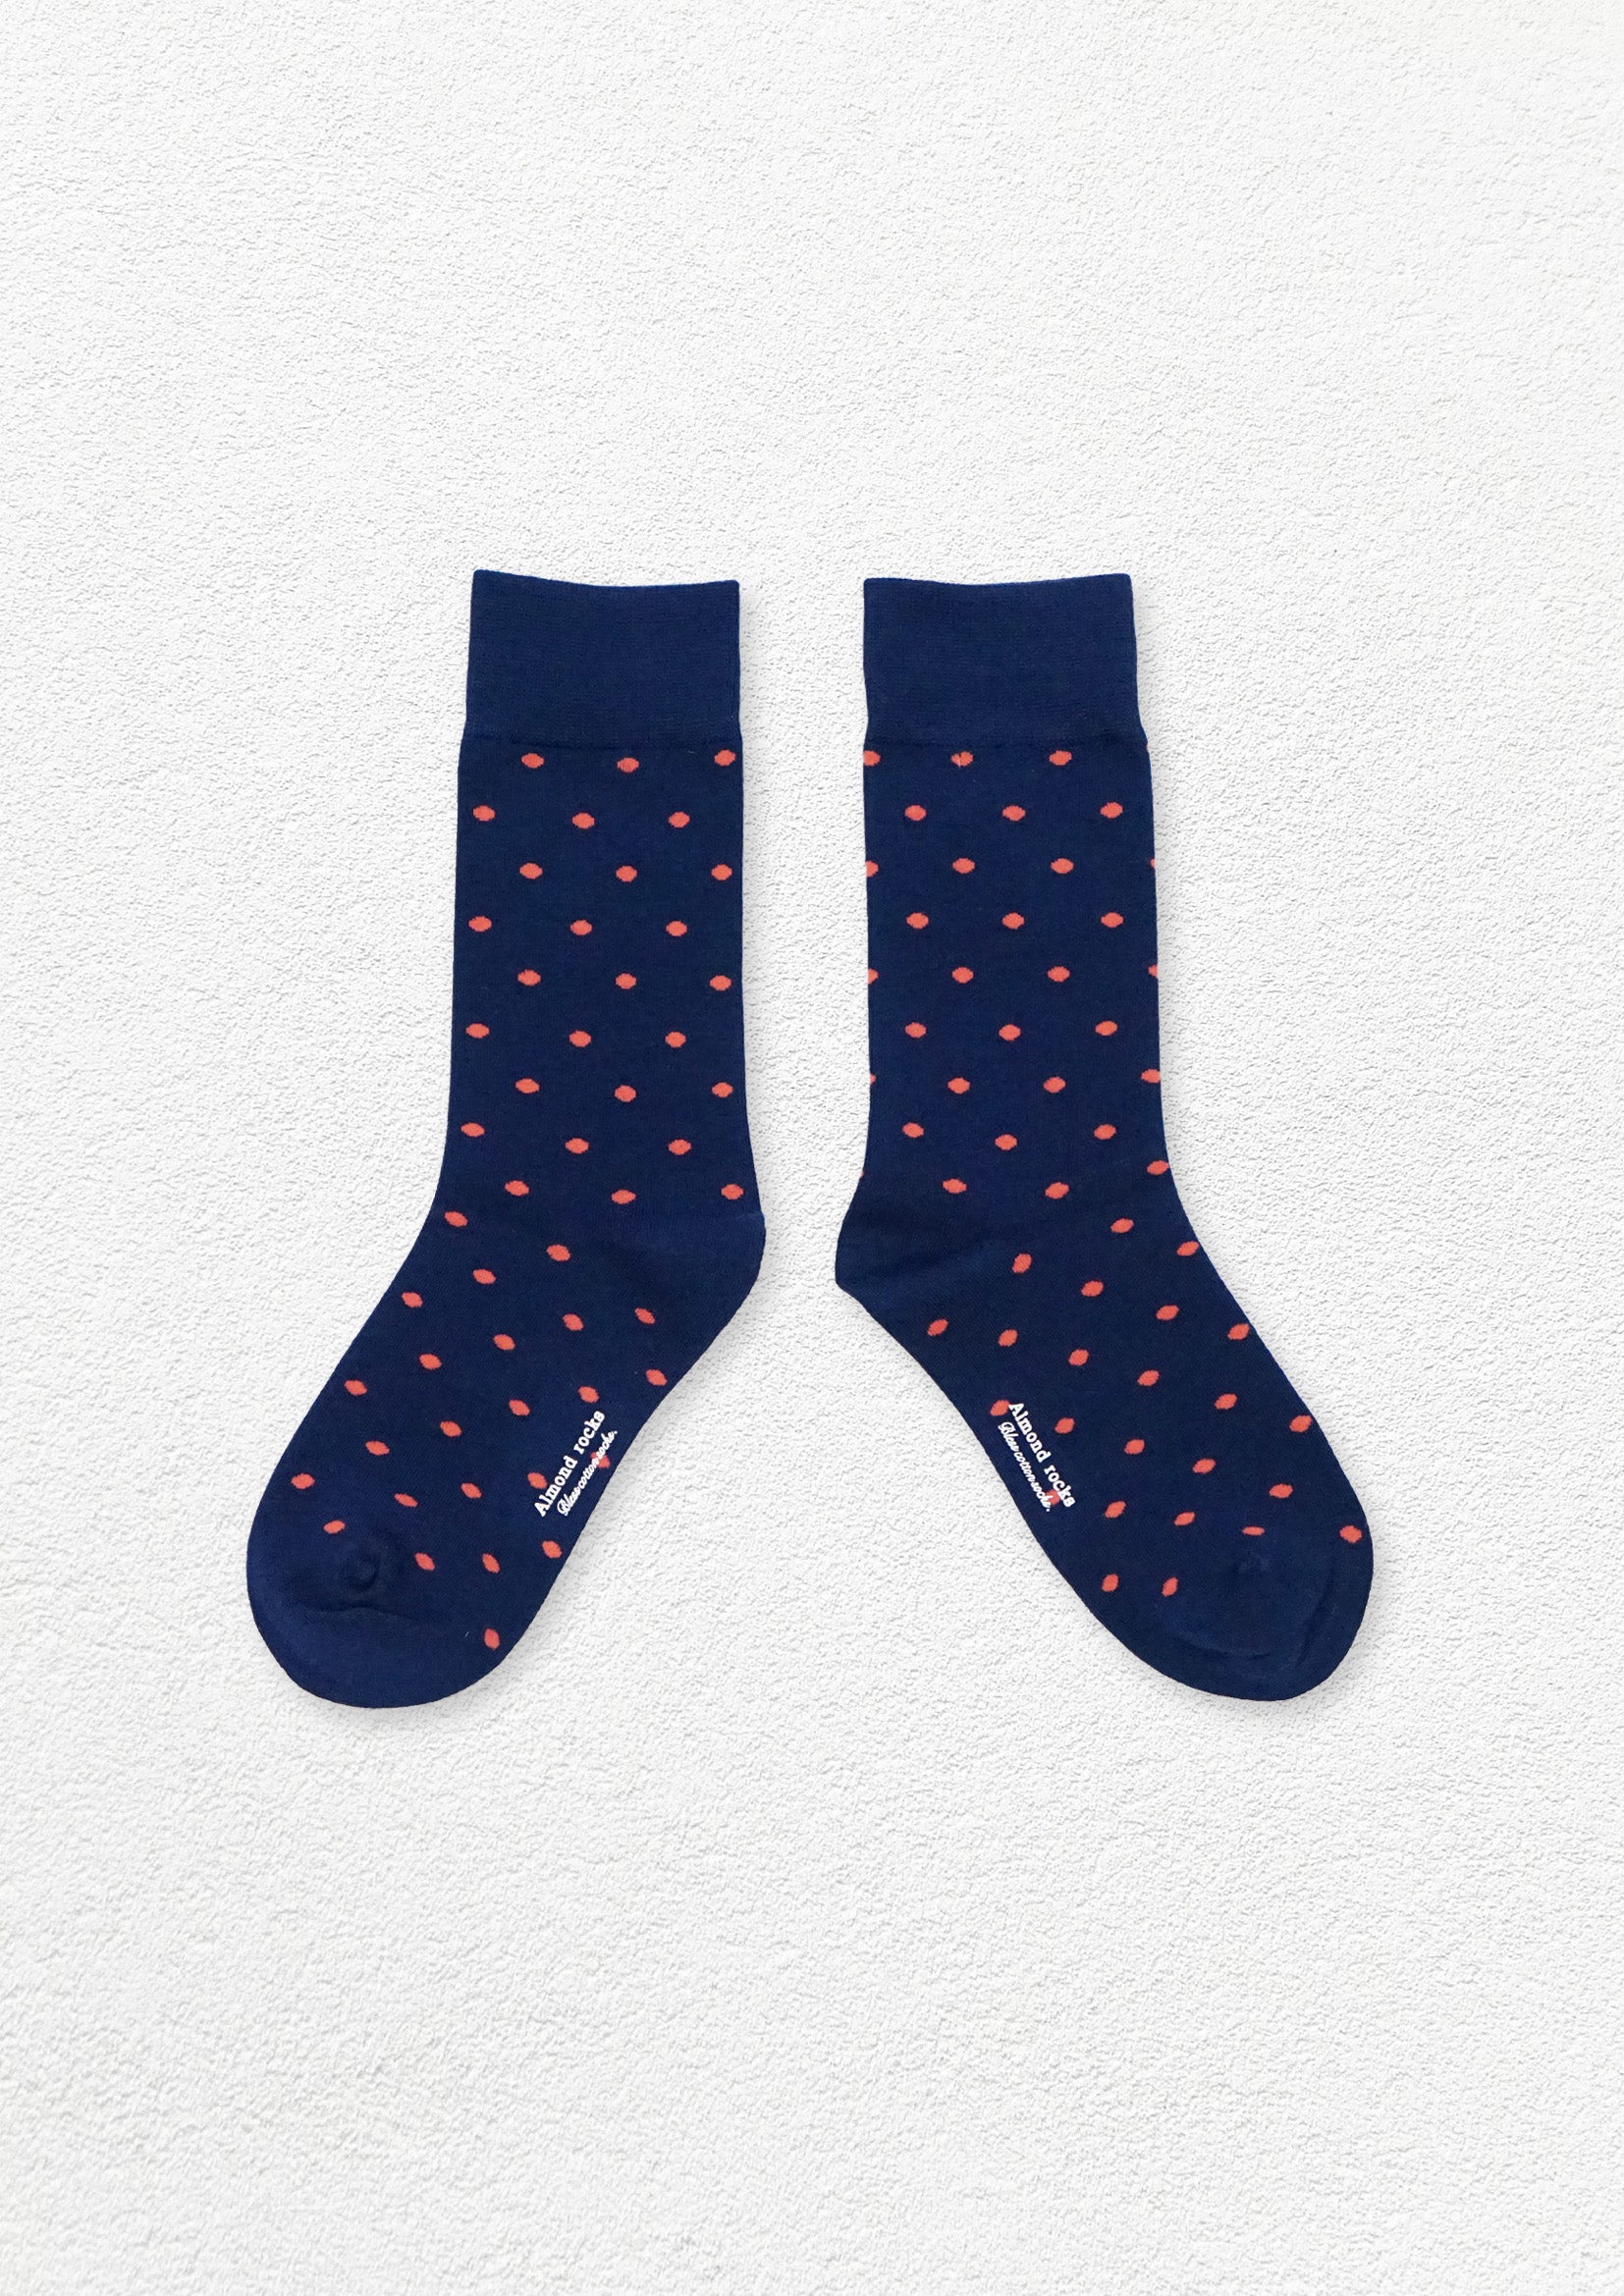 Tiny polka dot mid-calf sock - navy